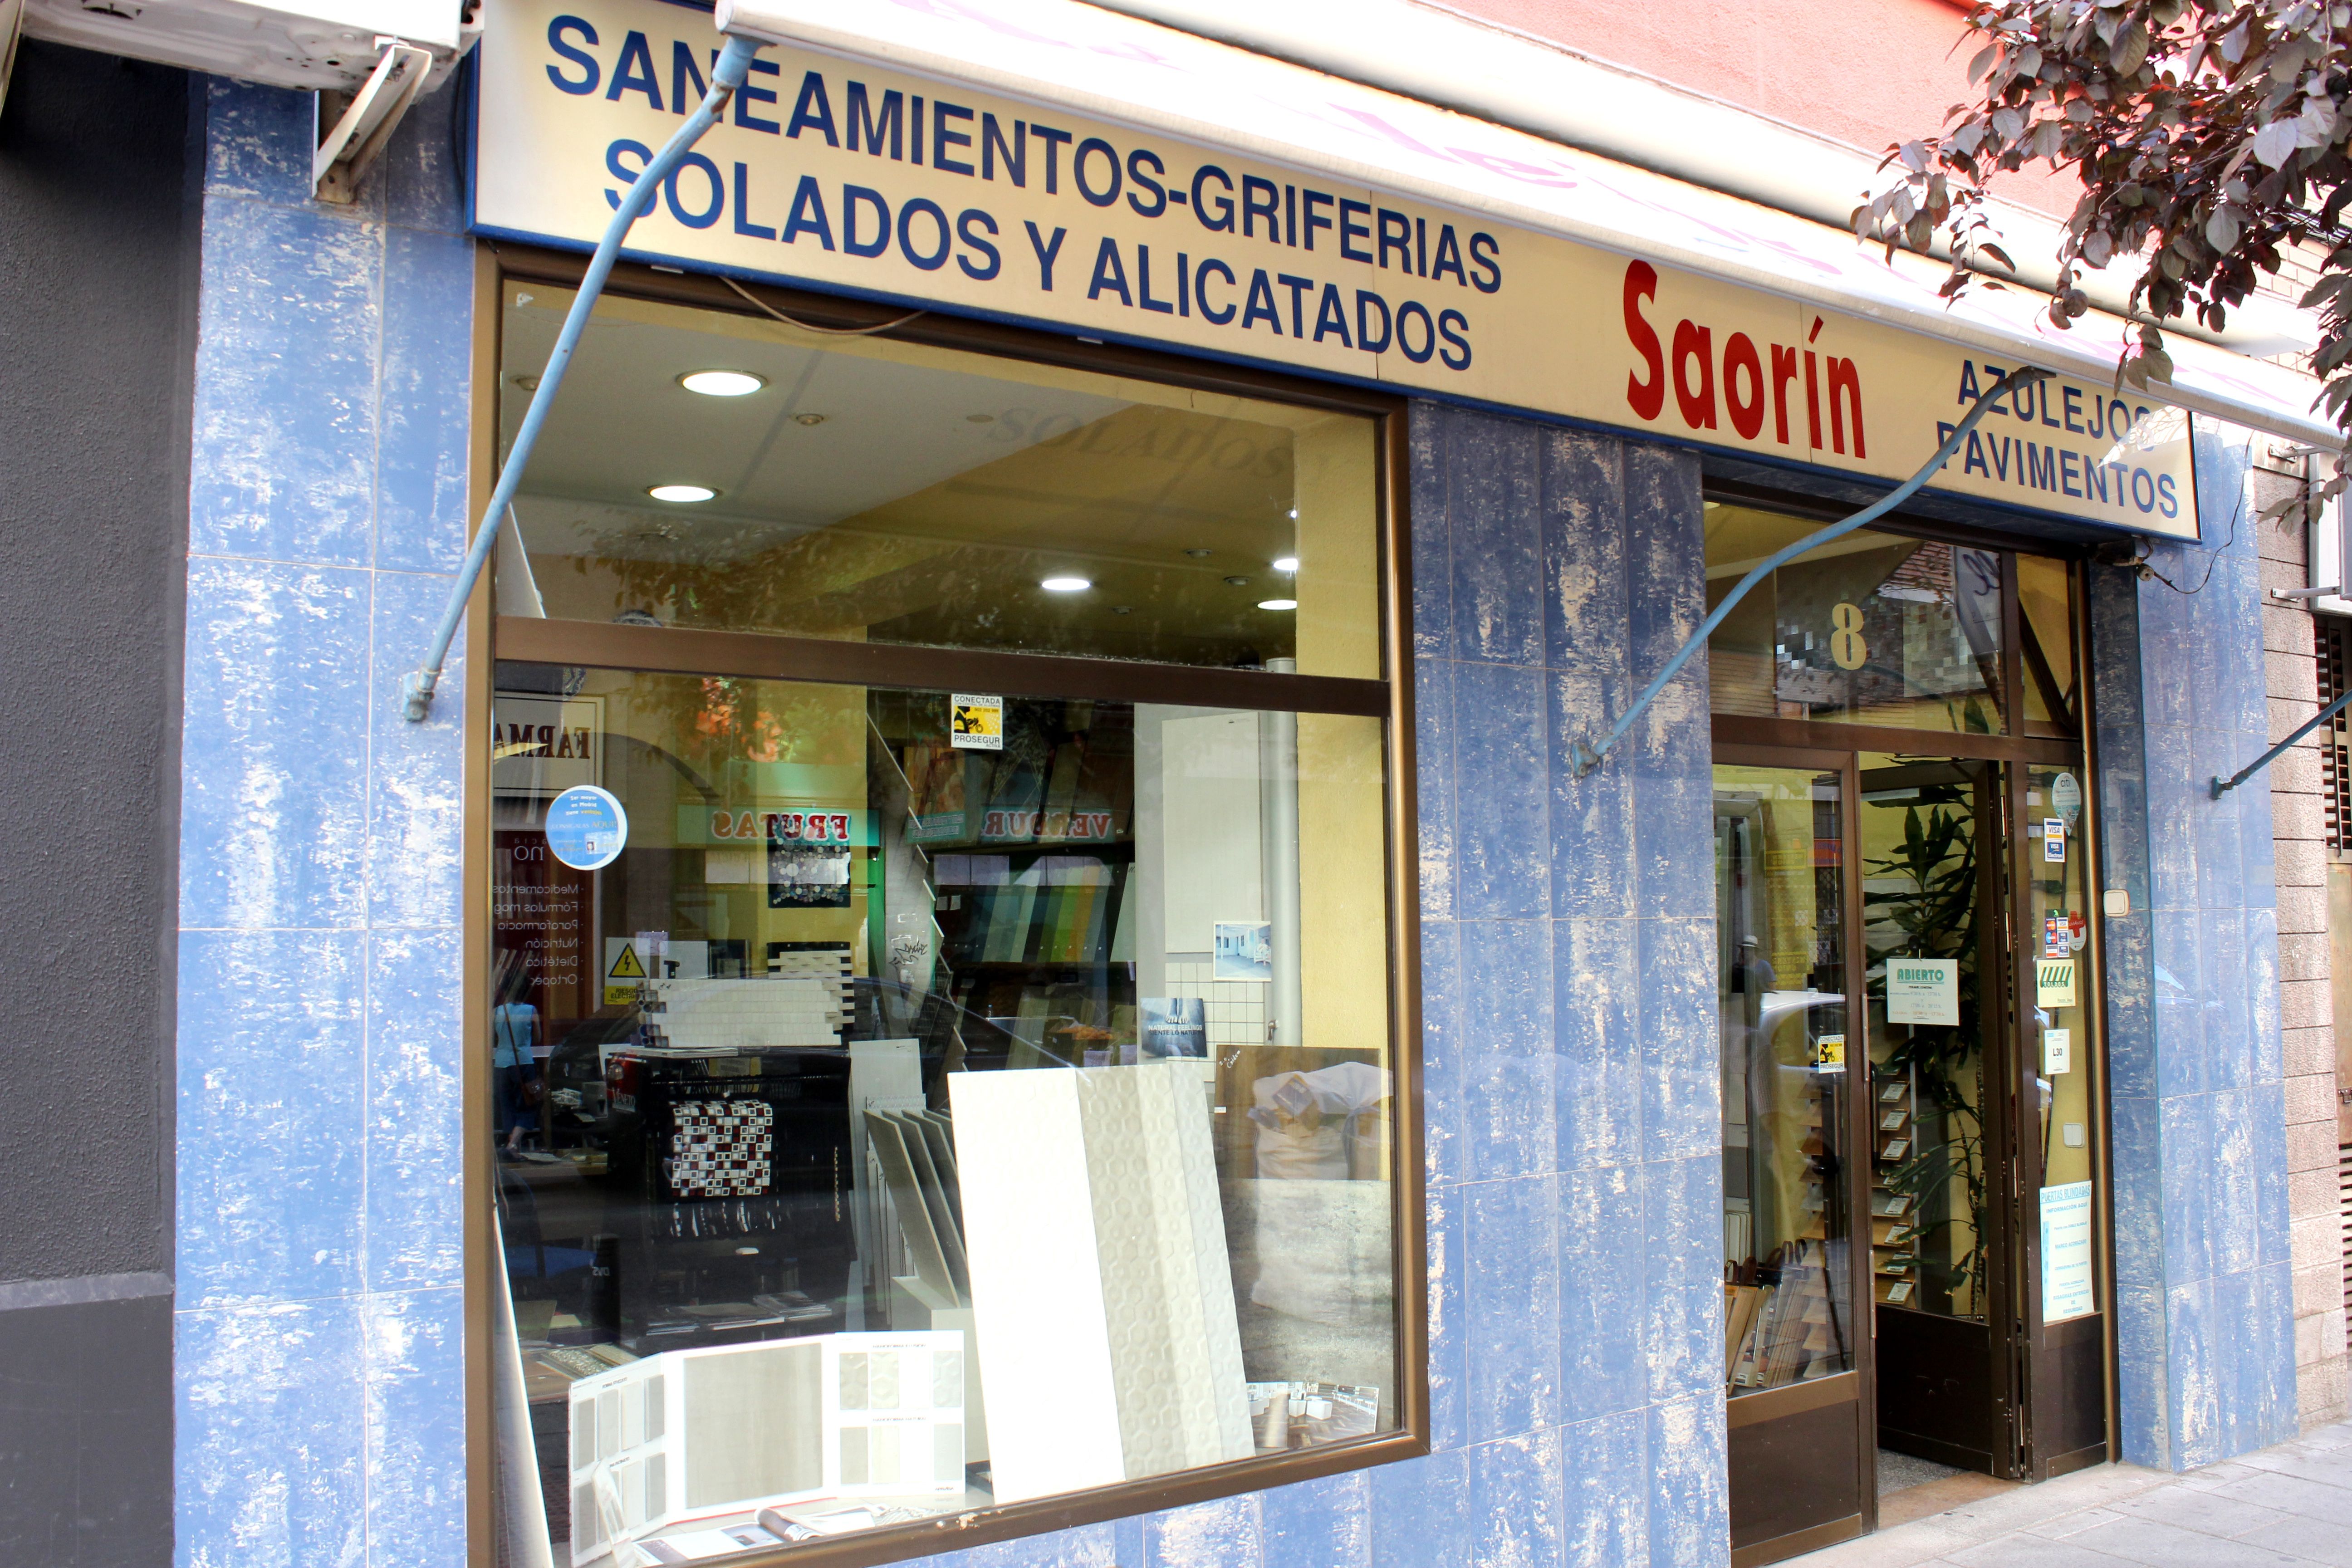 Foto 9 de Azulejos, pavimentos y baldosas cerámicas en Madrid | Azulejos Saorín